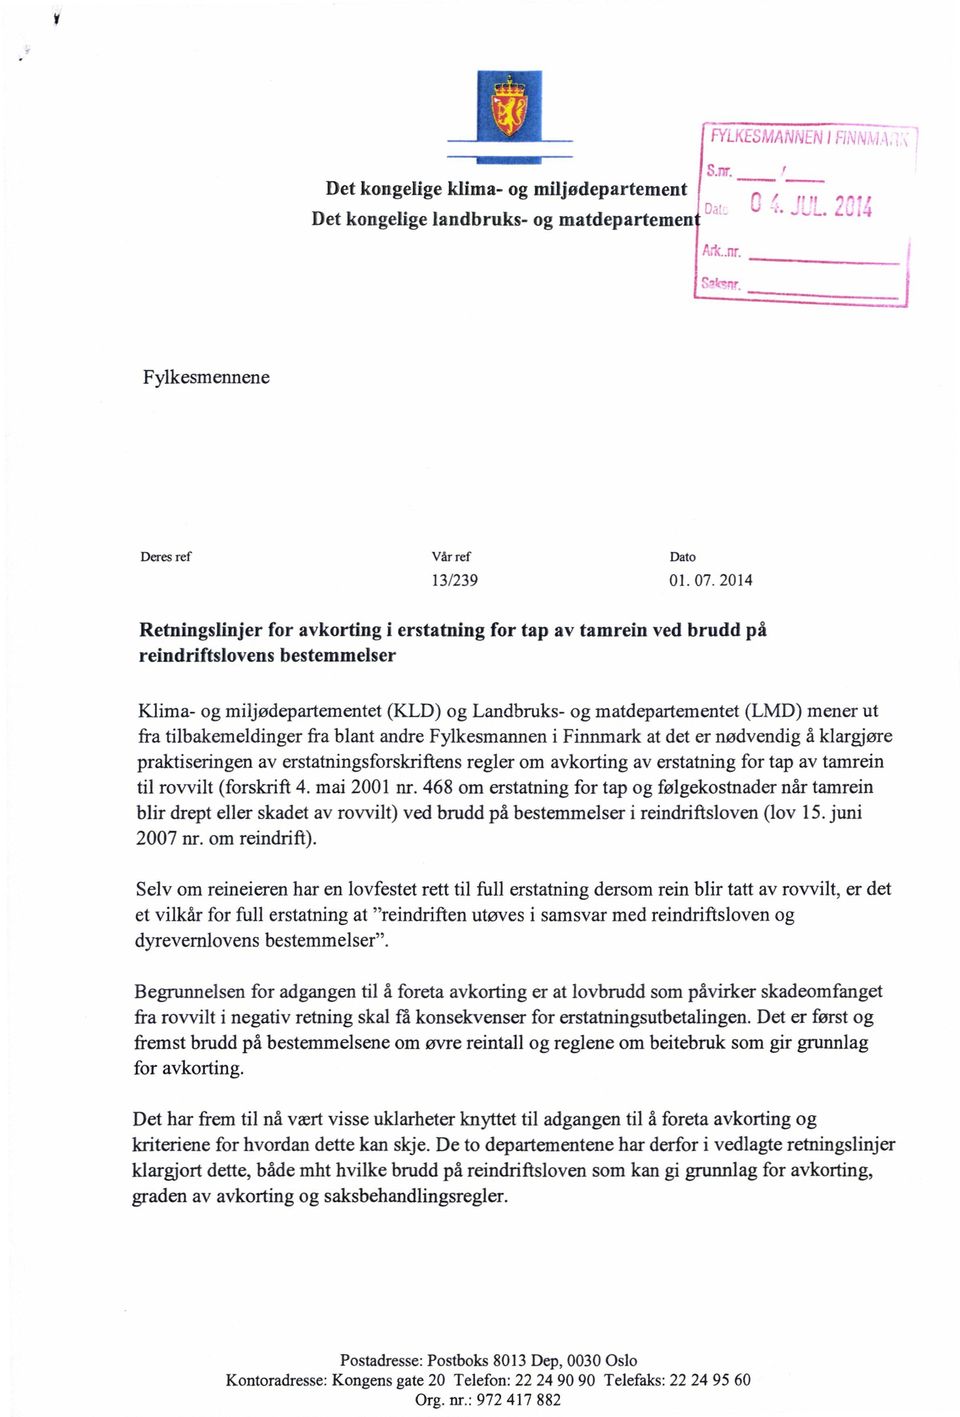 tilbakemeldinger fra blant andre Fylkesmannen i Finnmark at det er nødvendig å klargjøre praktiseringen av erstatningsforskriftens regler om avkorting av erstatning for tap av tamrein til rovvilt